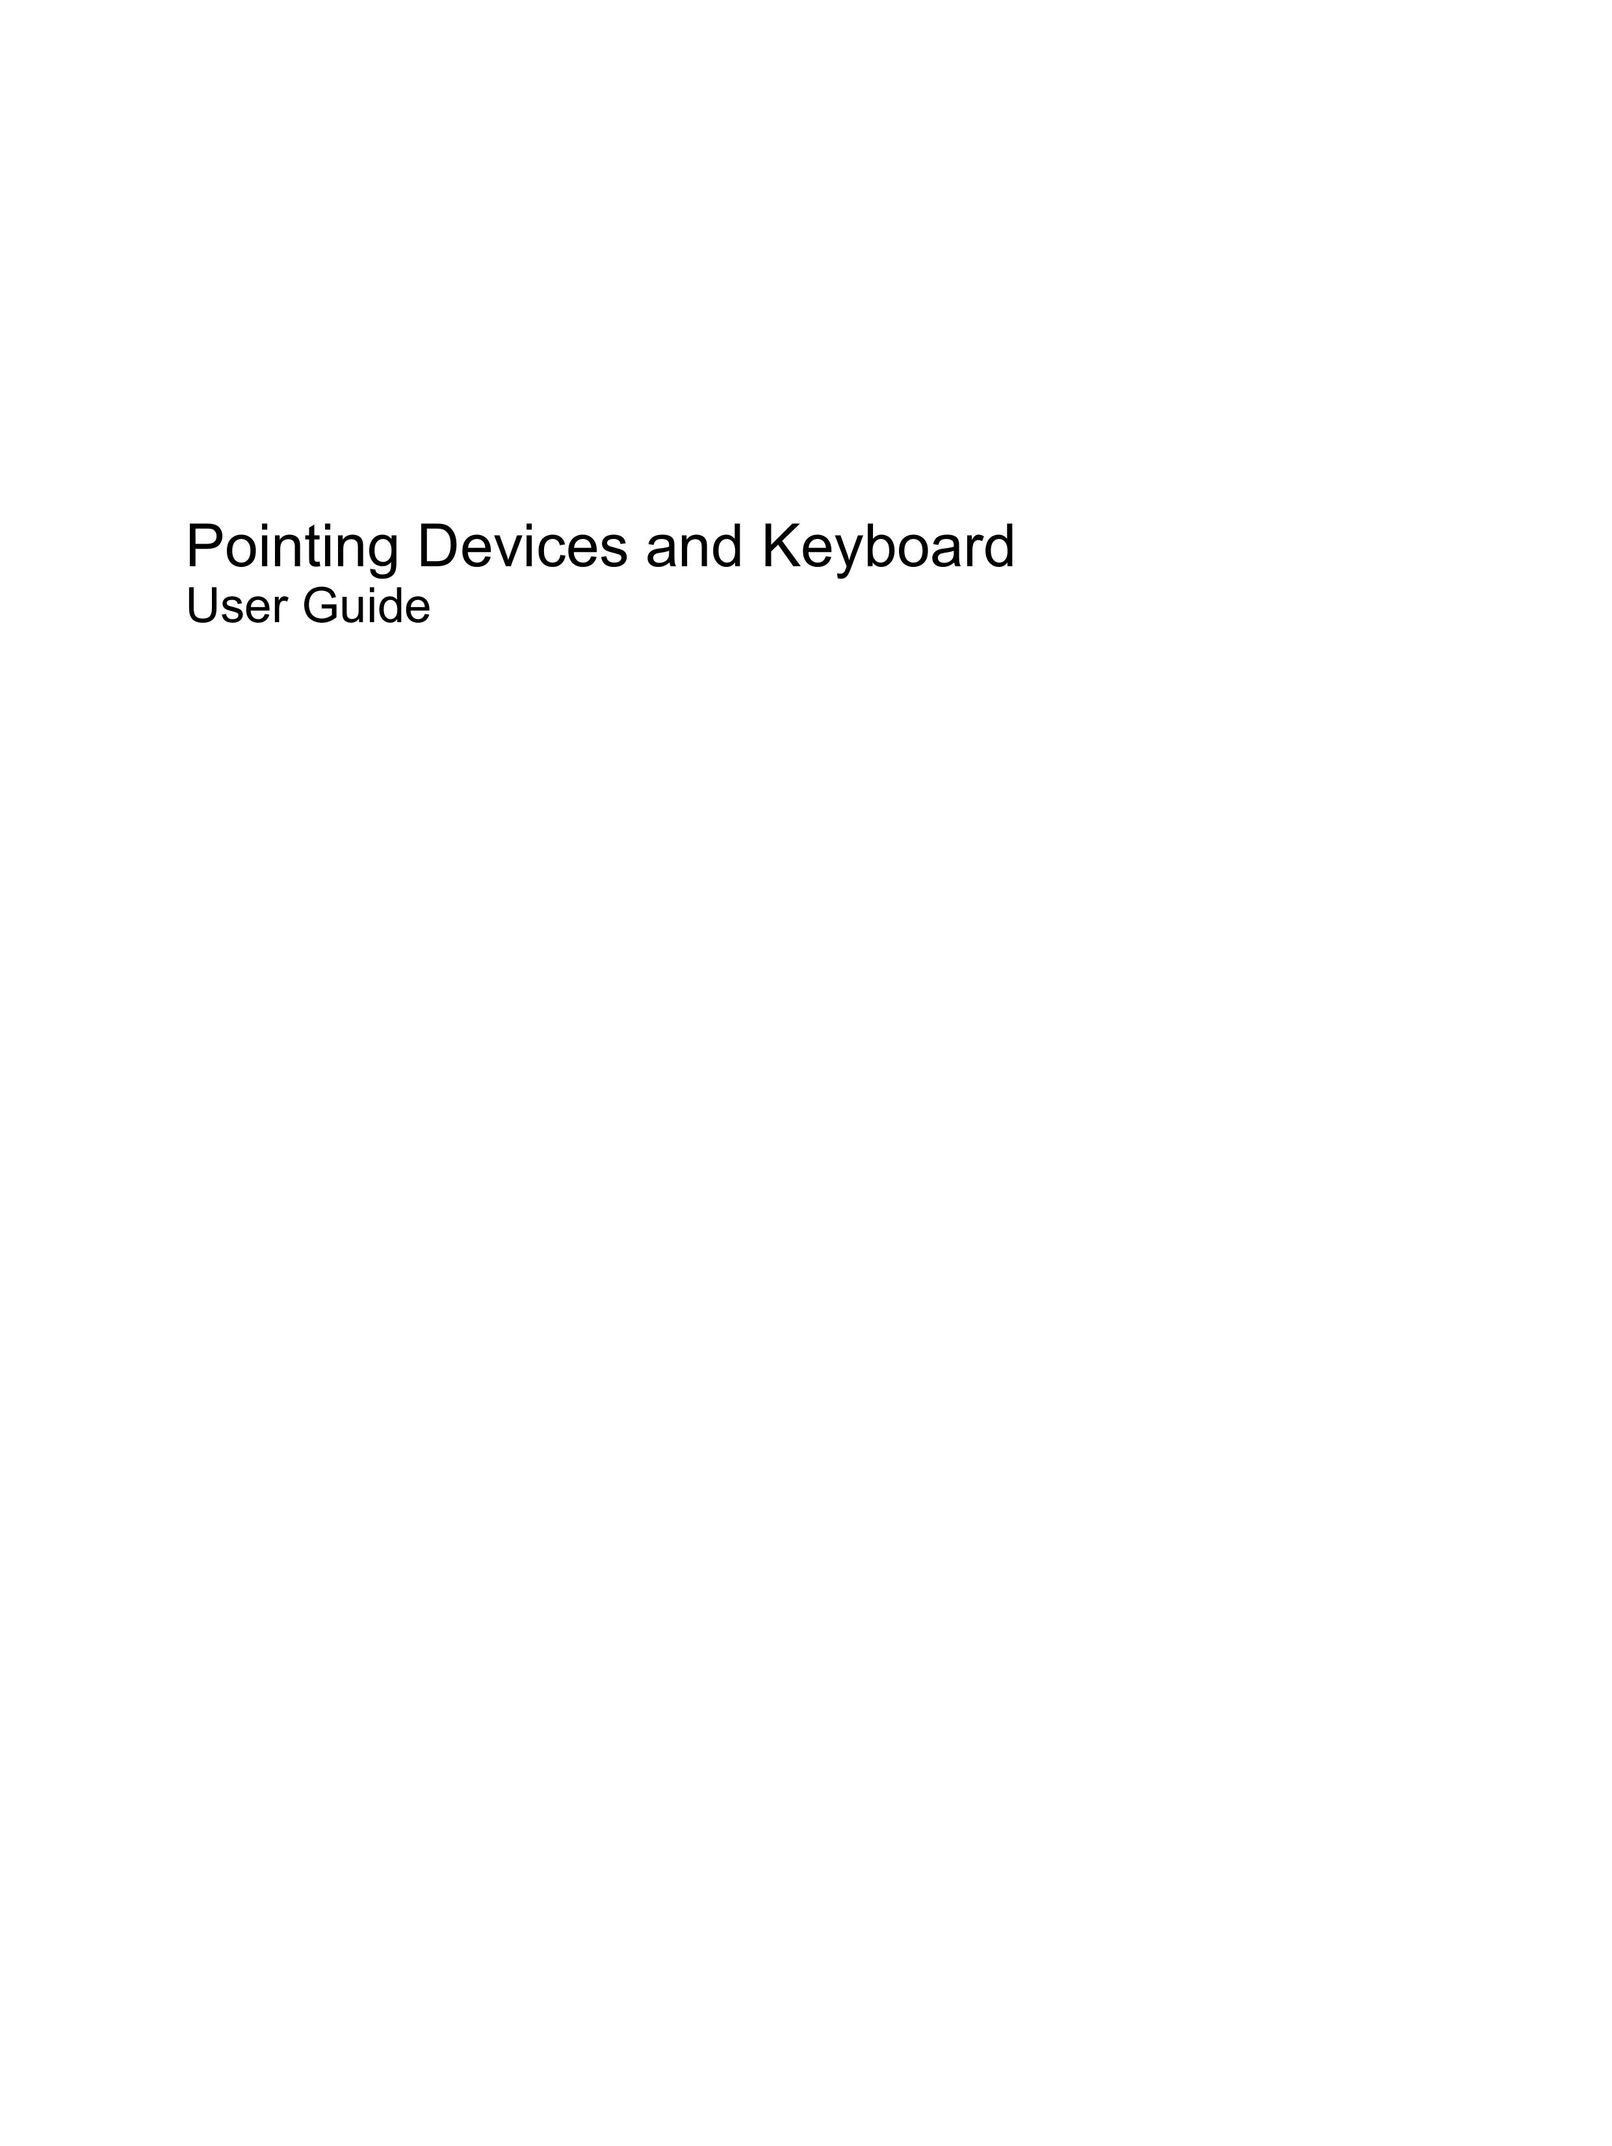 HP (Hewlett-Packard) F768WM Mouse User Manual